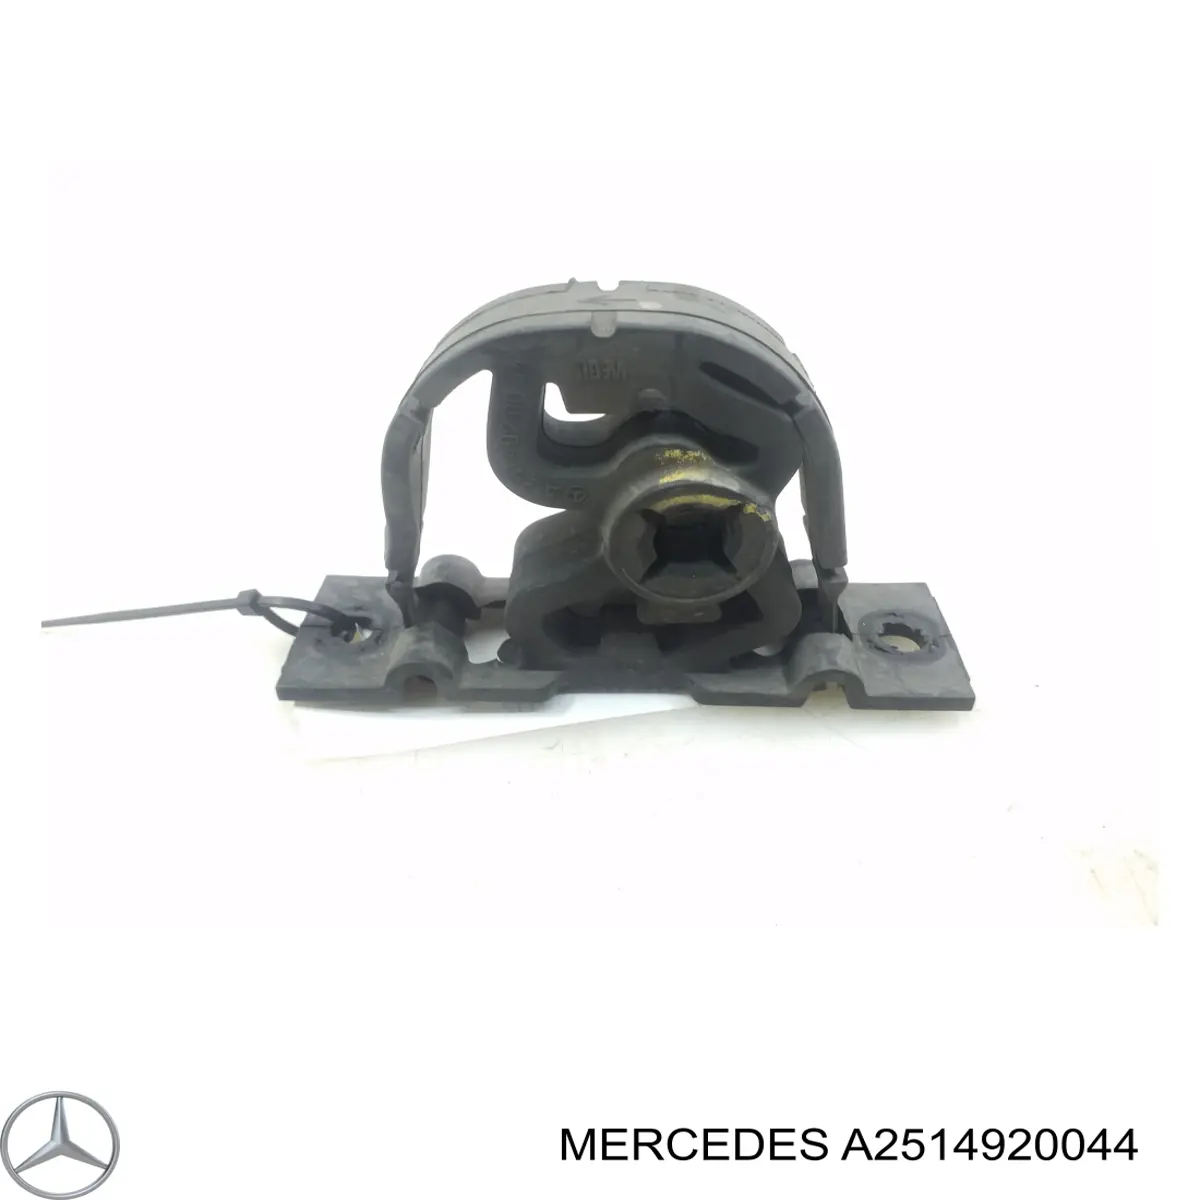 Abrazadera de silenciador trasera para Mercedes ML/GLE (W164)